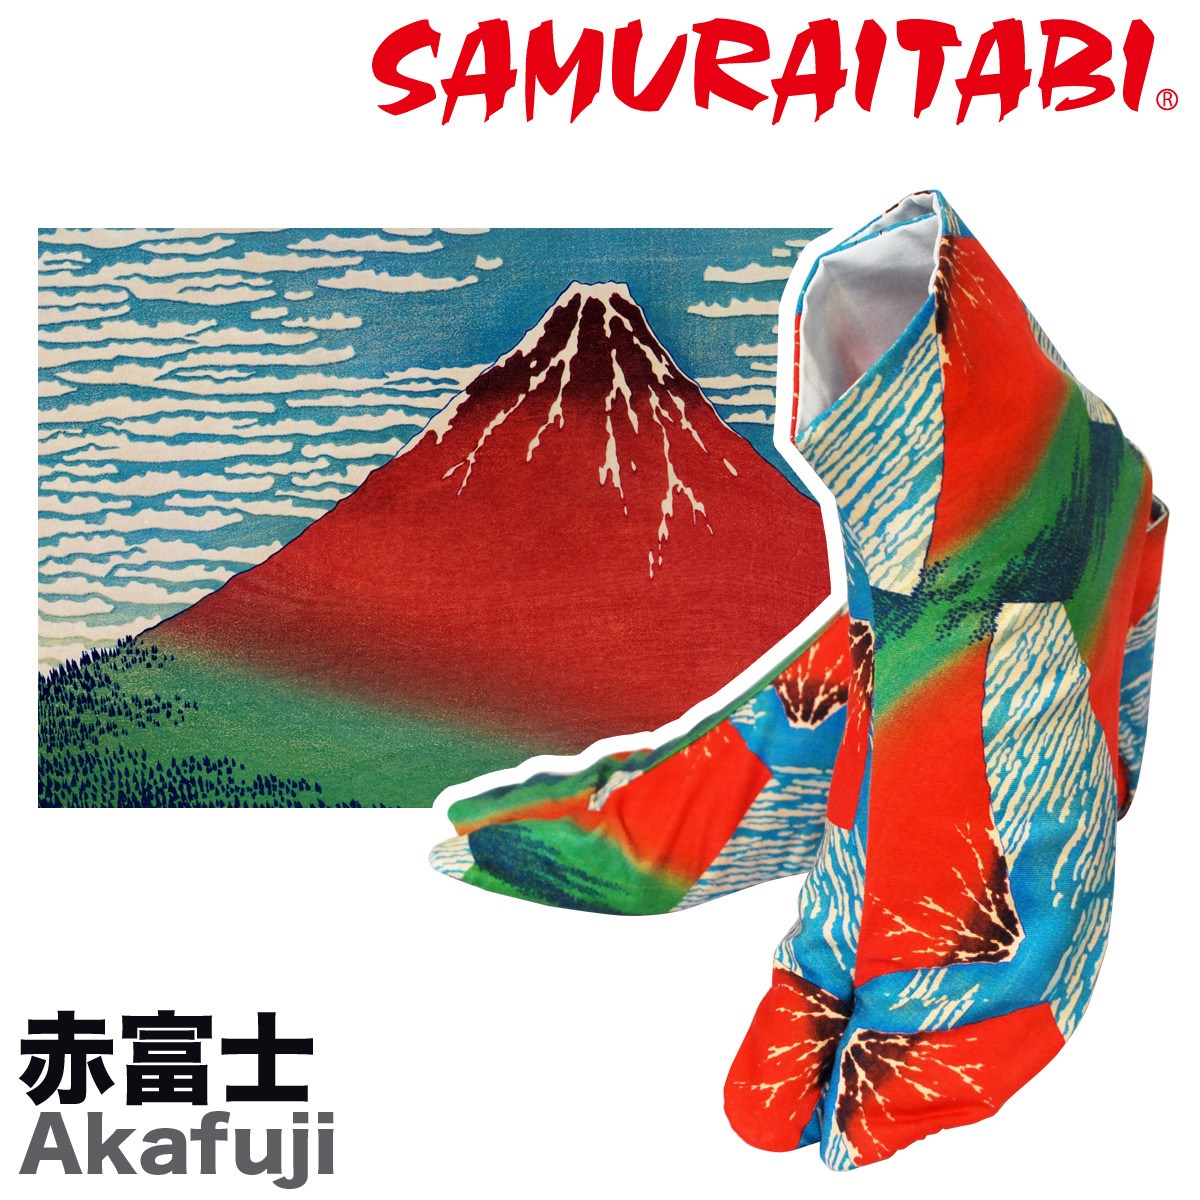 名画シリーズ〜赤富士〜 SAMUTAITABI 葛飾北斎 冨嶽三十六景 凱風快晴を柄にした足袋です。 ※在庫がない場合、作製するのに1ヶ月程度かかります。 日本国内の足袋生産量80%をほこる「埼玉県行田市」の足袋職人が、ひとつひとつ心を込めてお作りしていますので、到着までお時間を頂戴しております。 samuraitabi 侍 サムライ 足袋 柄足袋 葛飾北斎